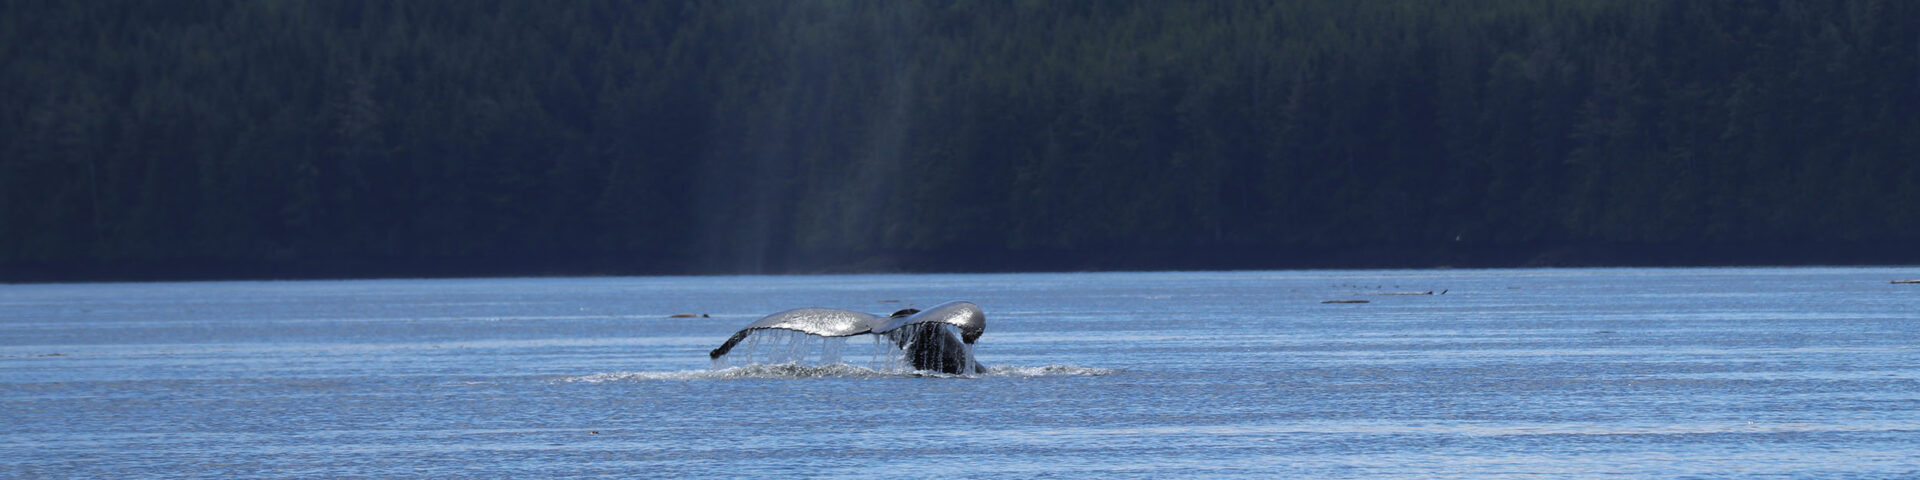 Orcas en Walvissen spotten in Canada